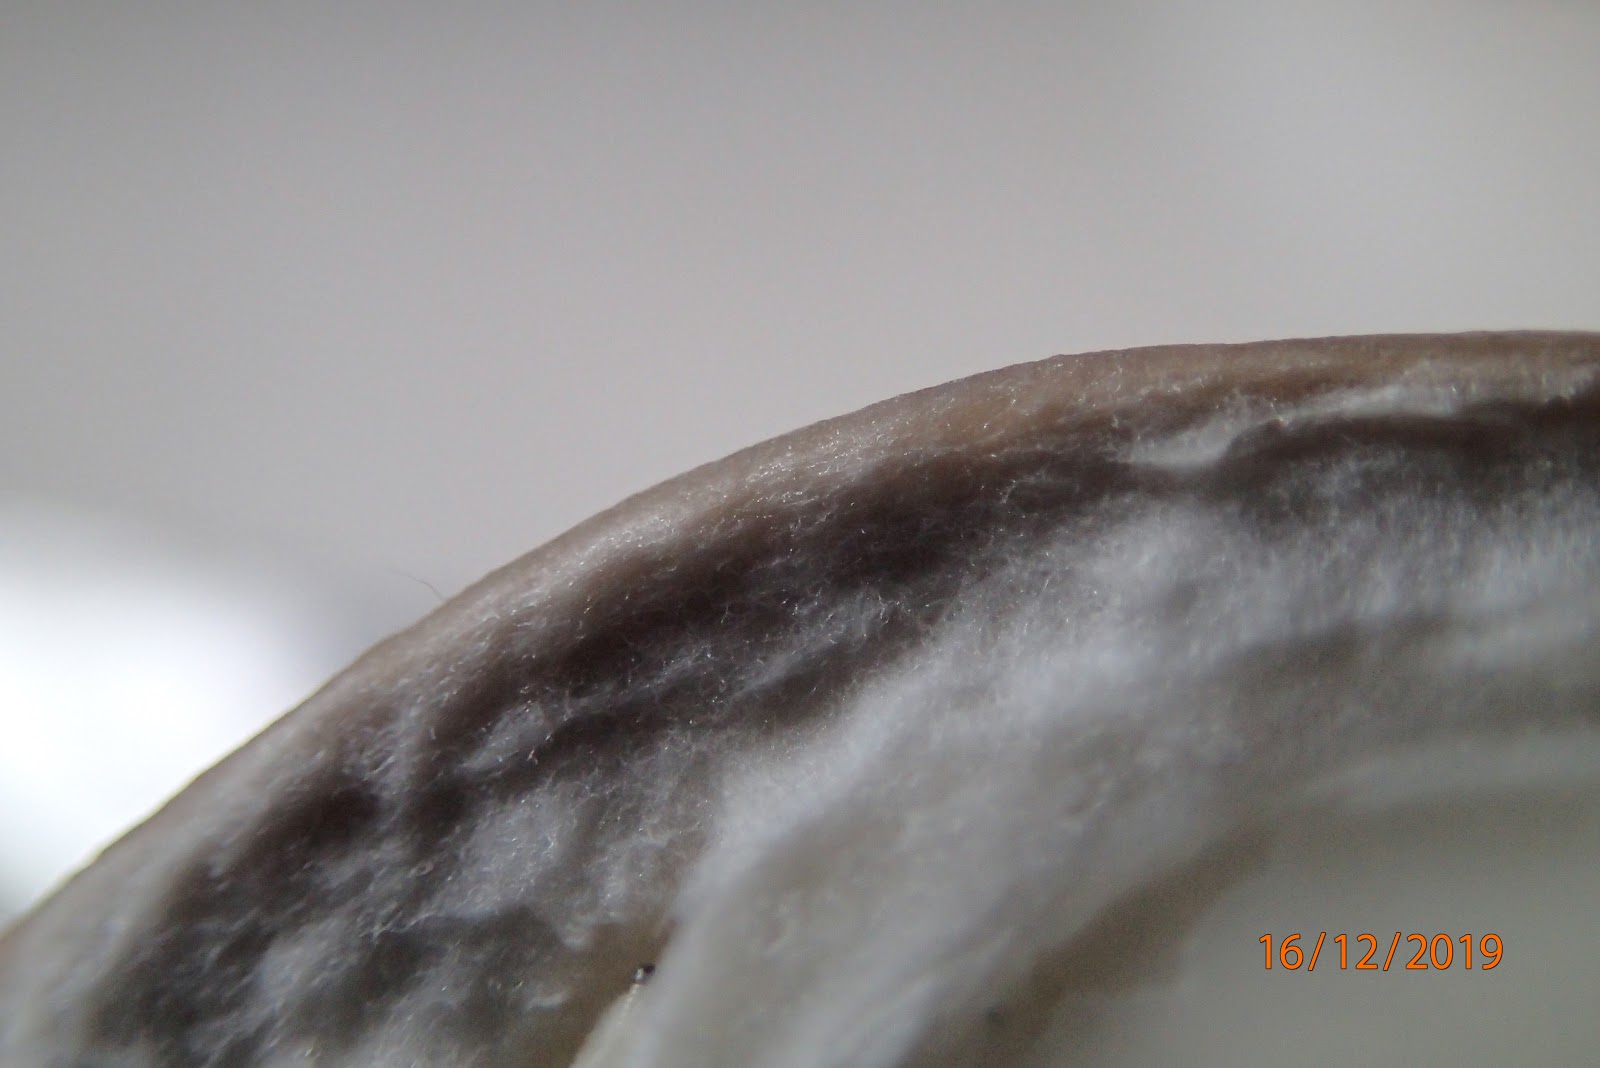 Foto doorsnede oesterzwam: De hoed van de oesterzwam voelt veel droger aan, bijna satijnachtig.